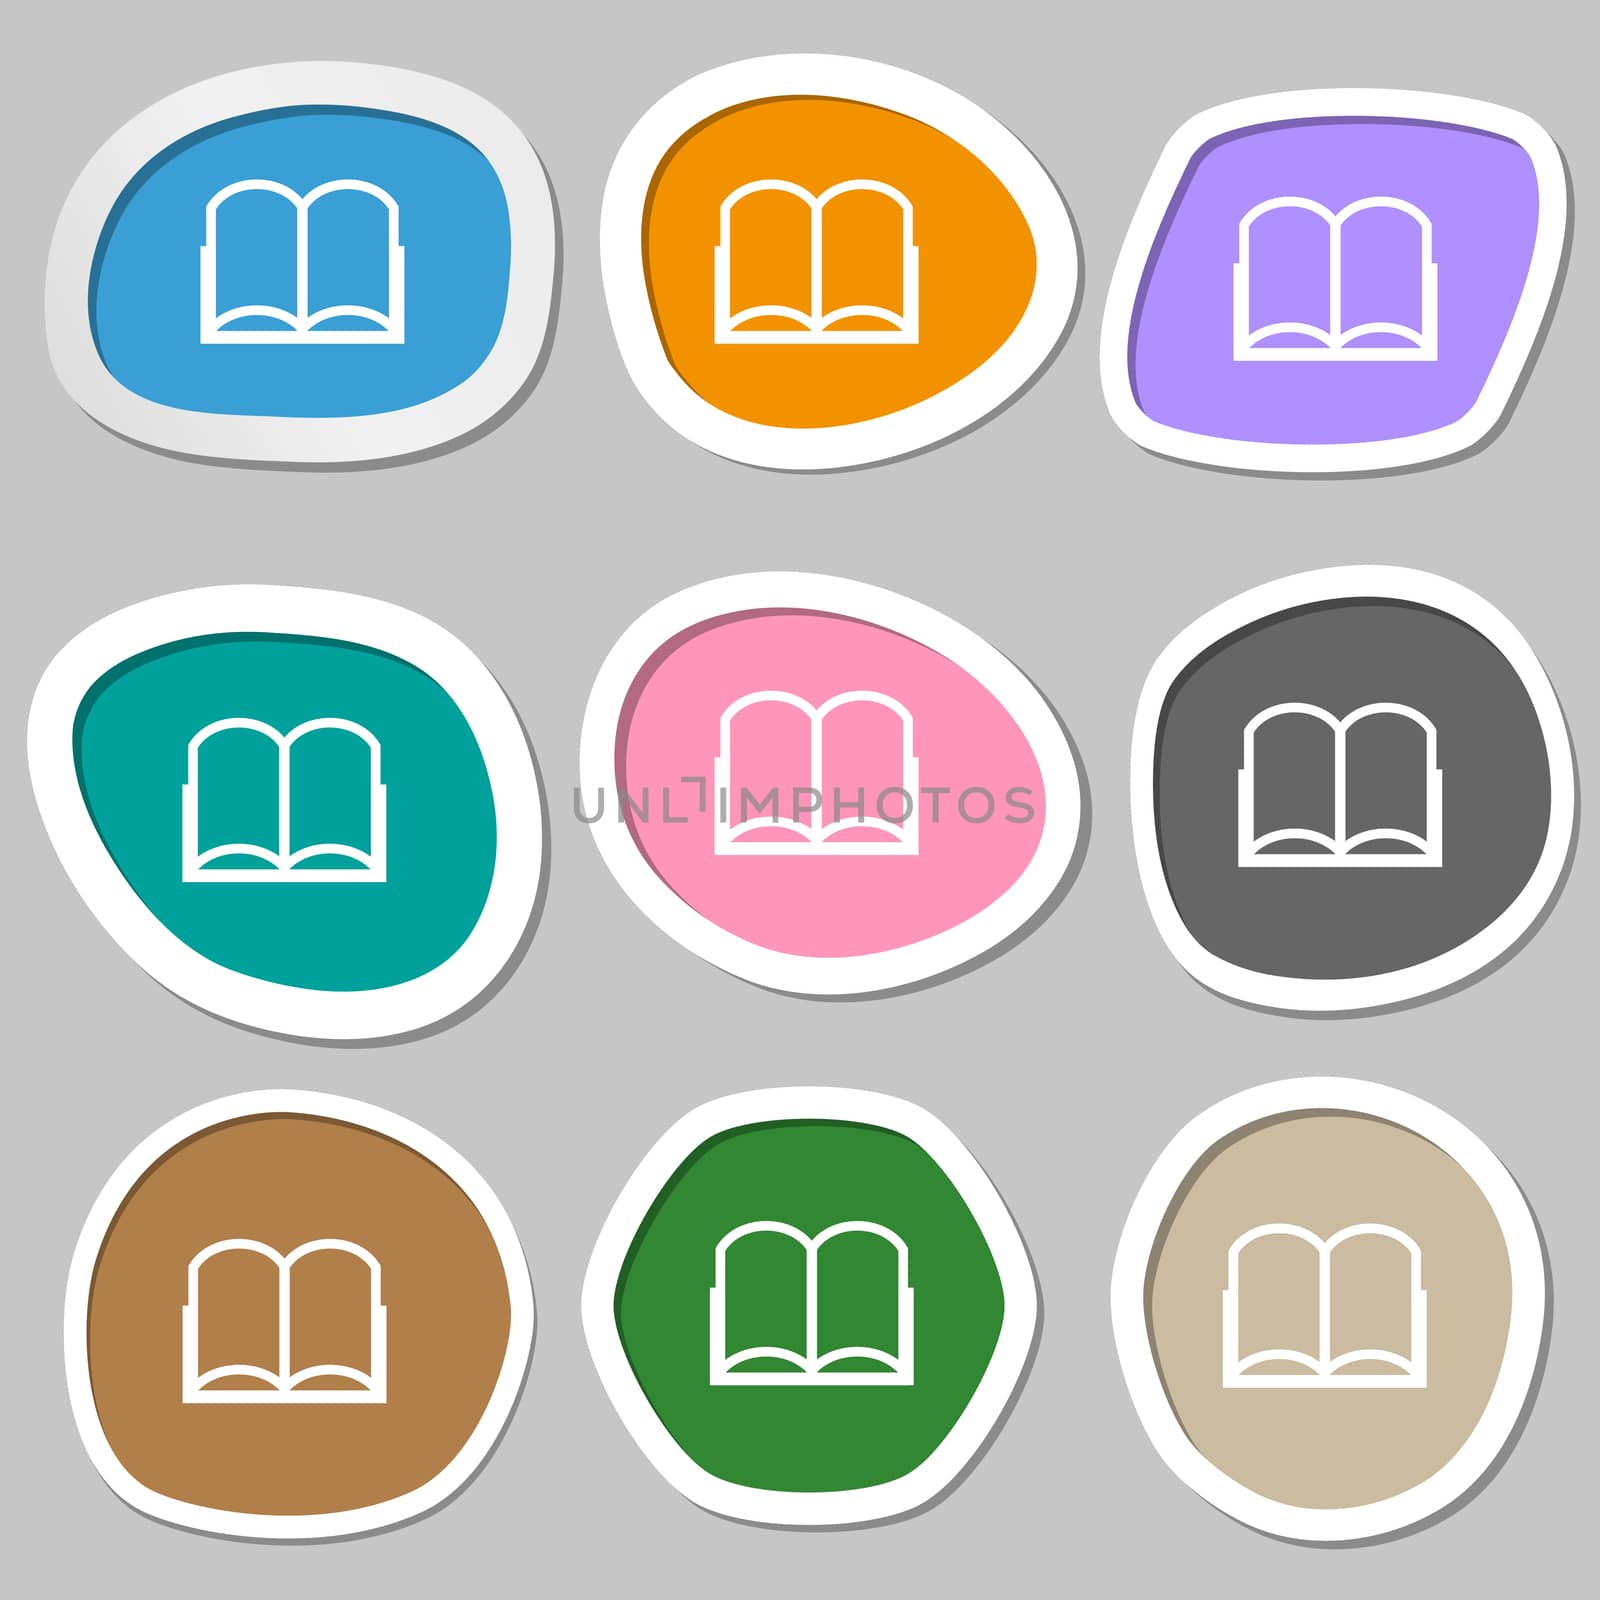 Book sign icon. Open book symbol. Multicolored paper stickers. illustration